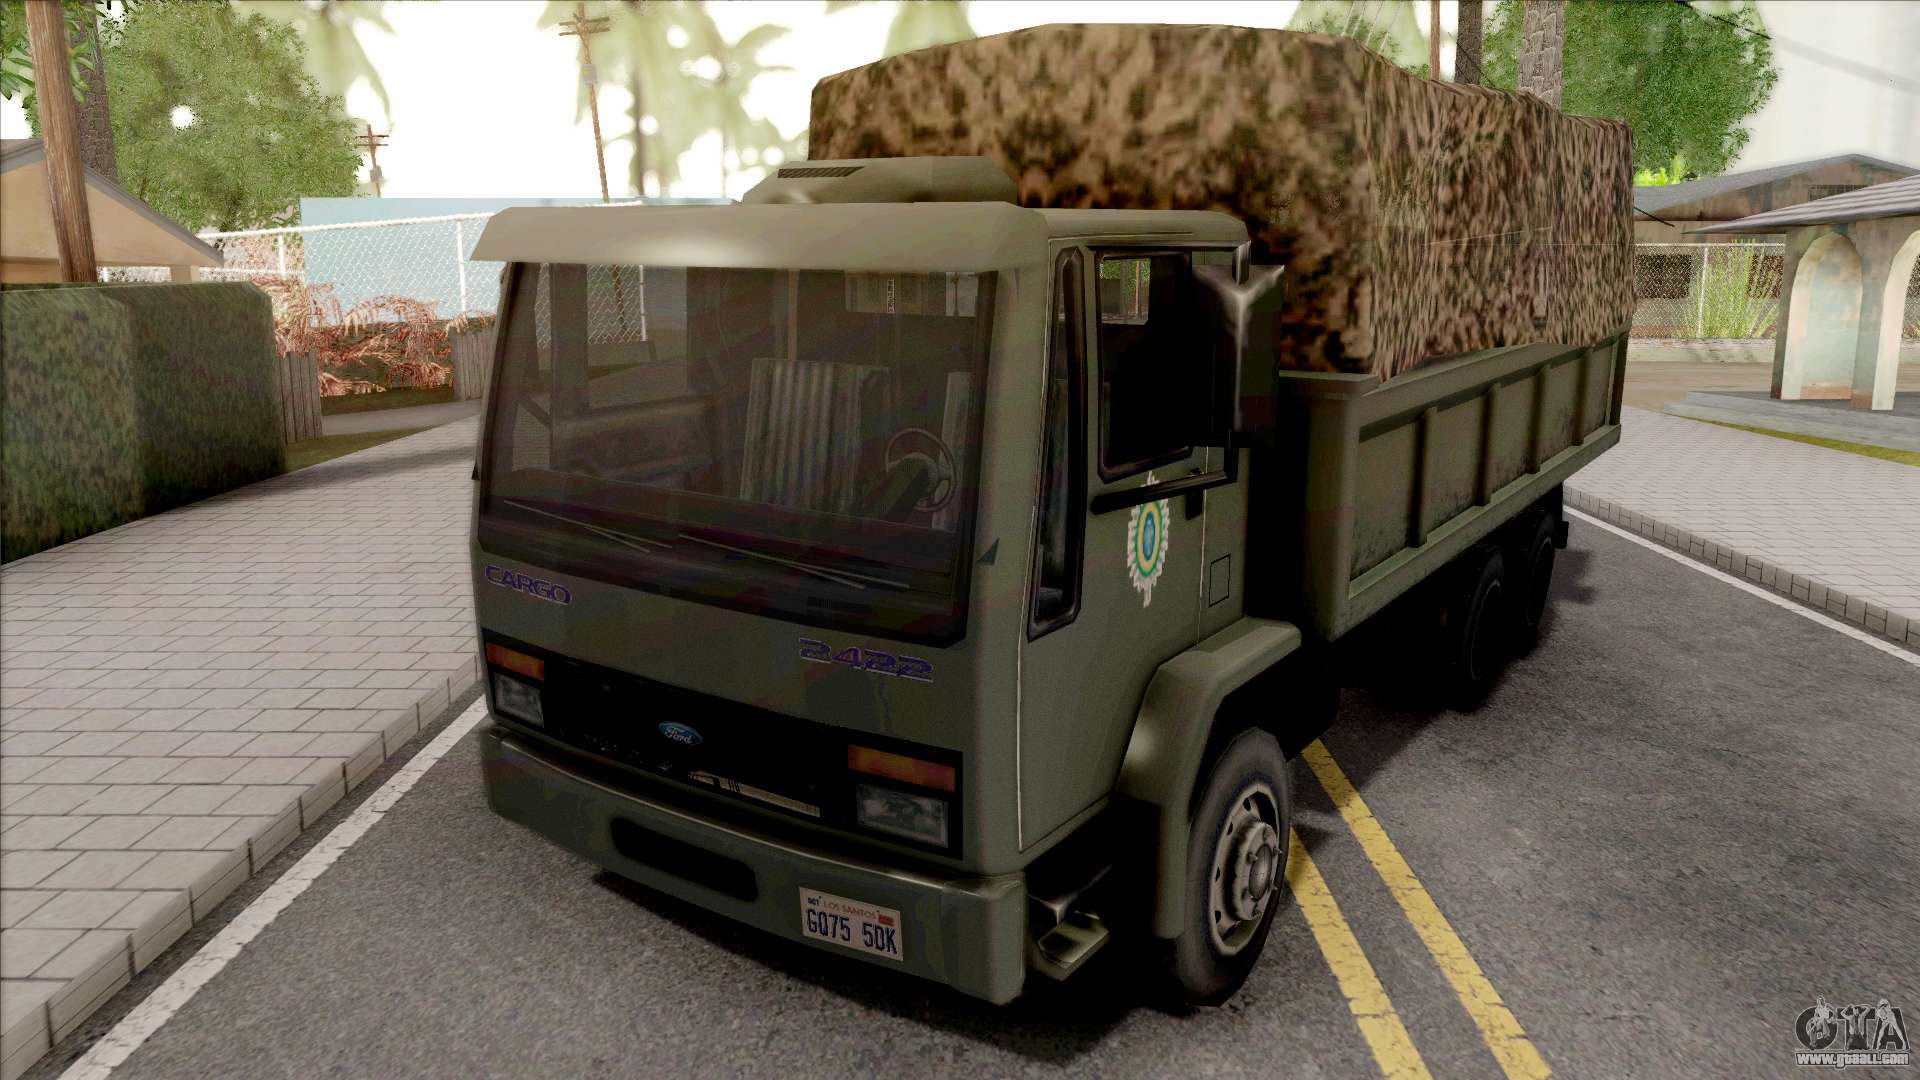 Ford Cargo 2422 Exercito Brasileiro For Gta San Andreas - Grand Theft Auto: San Andreas - HD Wallpaper 